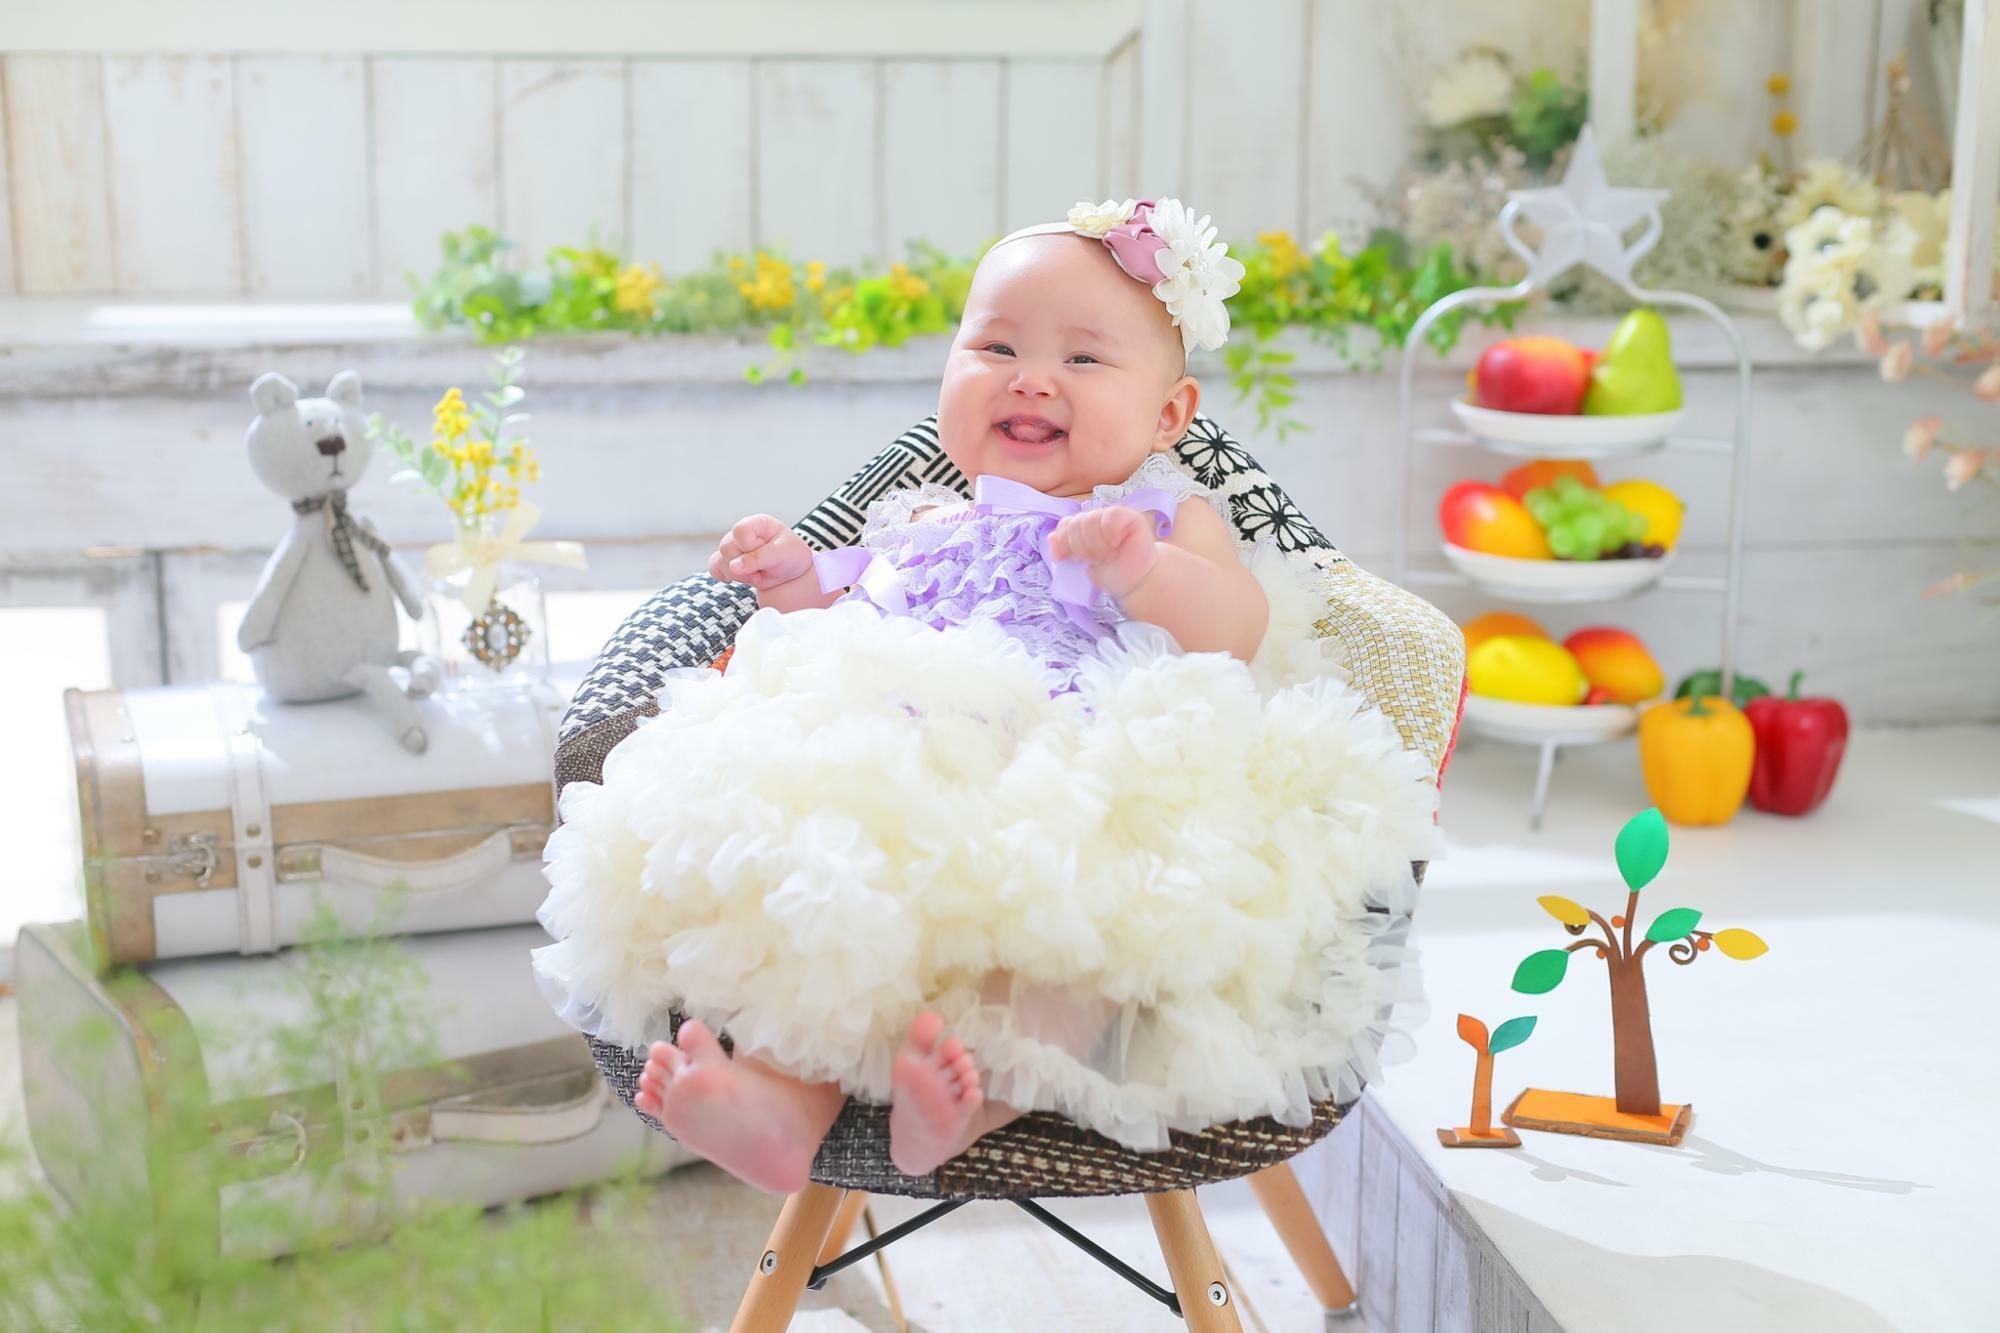 ムチムチ具合も赤ちゃんの可愛らしさが。背景にコントラストの鮮やかな小物を置く事で被写体がより主役になります。